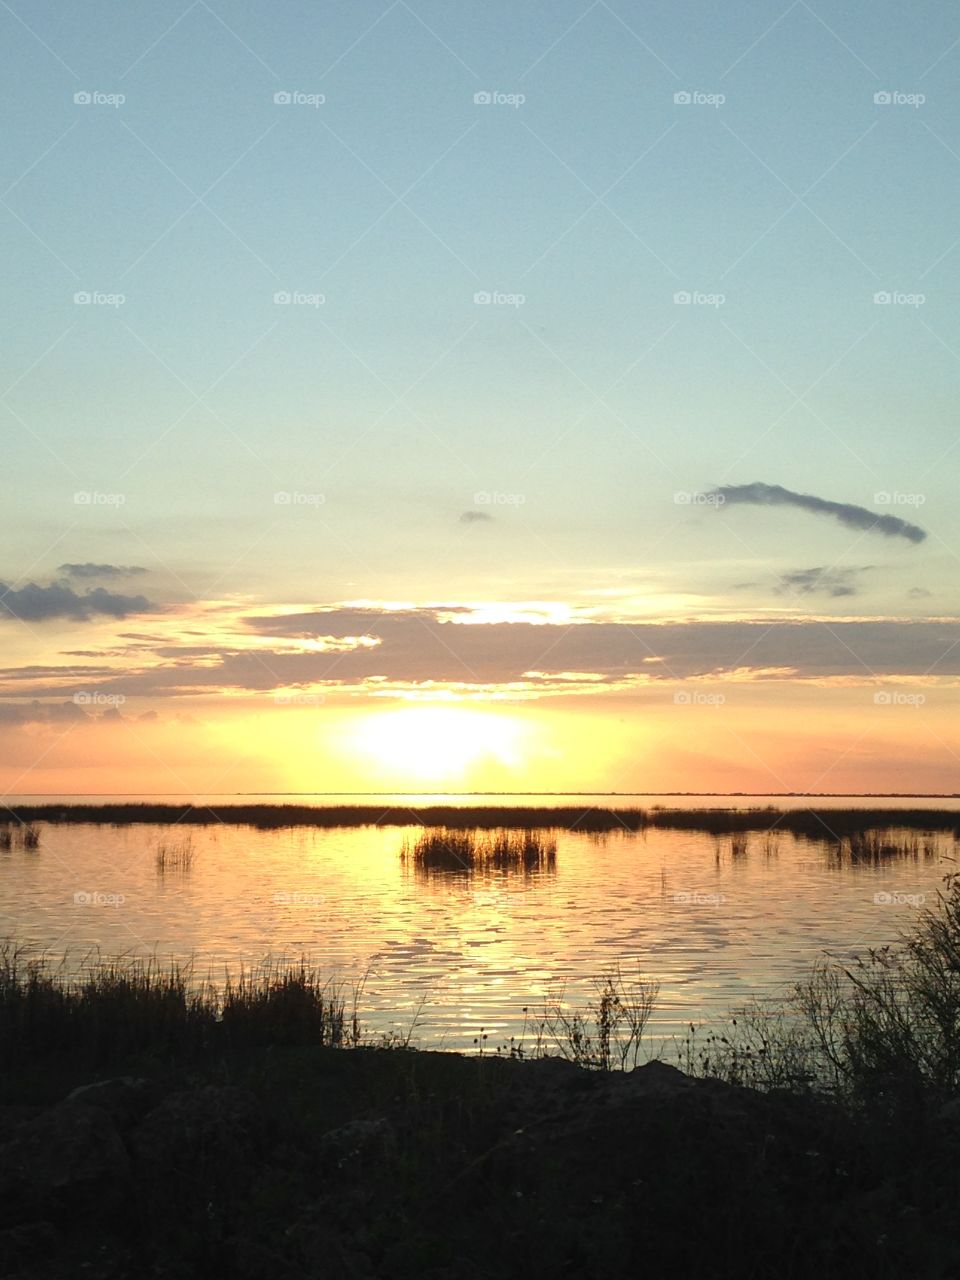 Sunset at Nubbin Slough near Okeechobee, Florida 